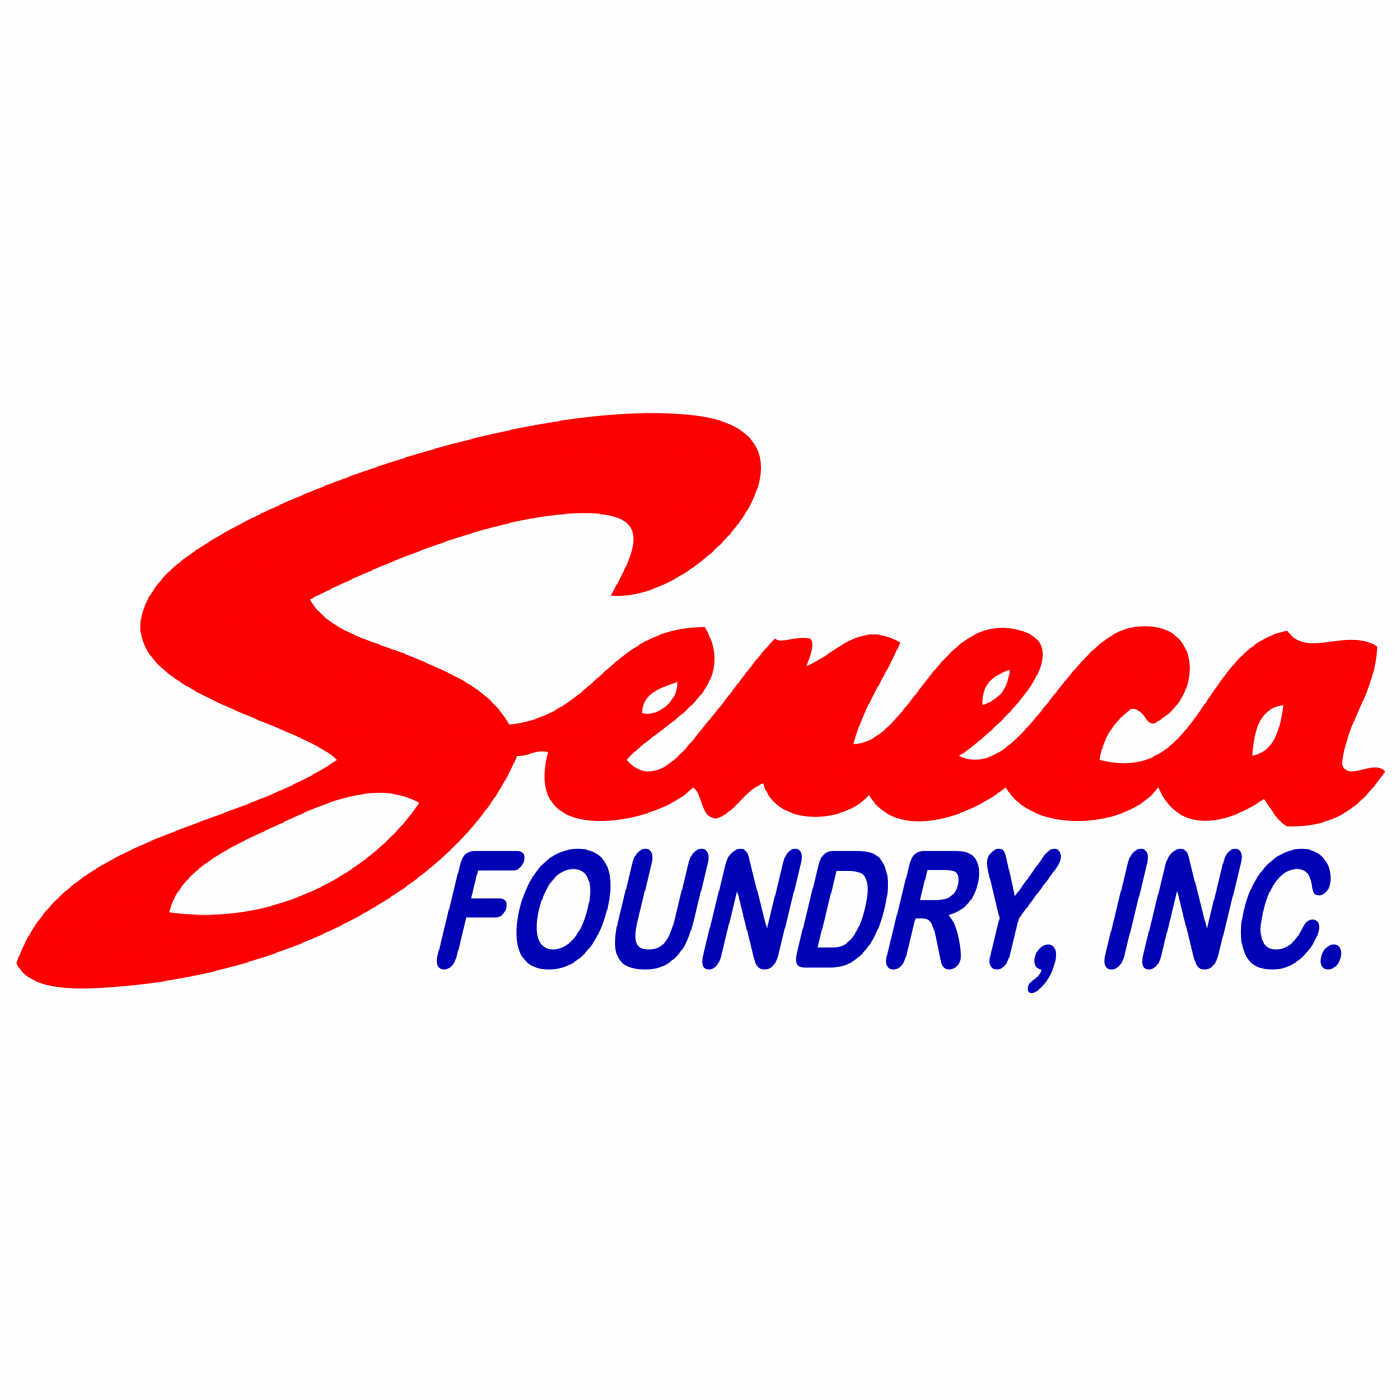 Seneca Foundry